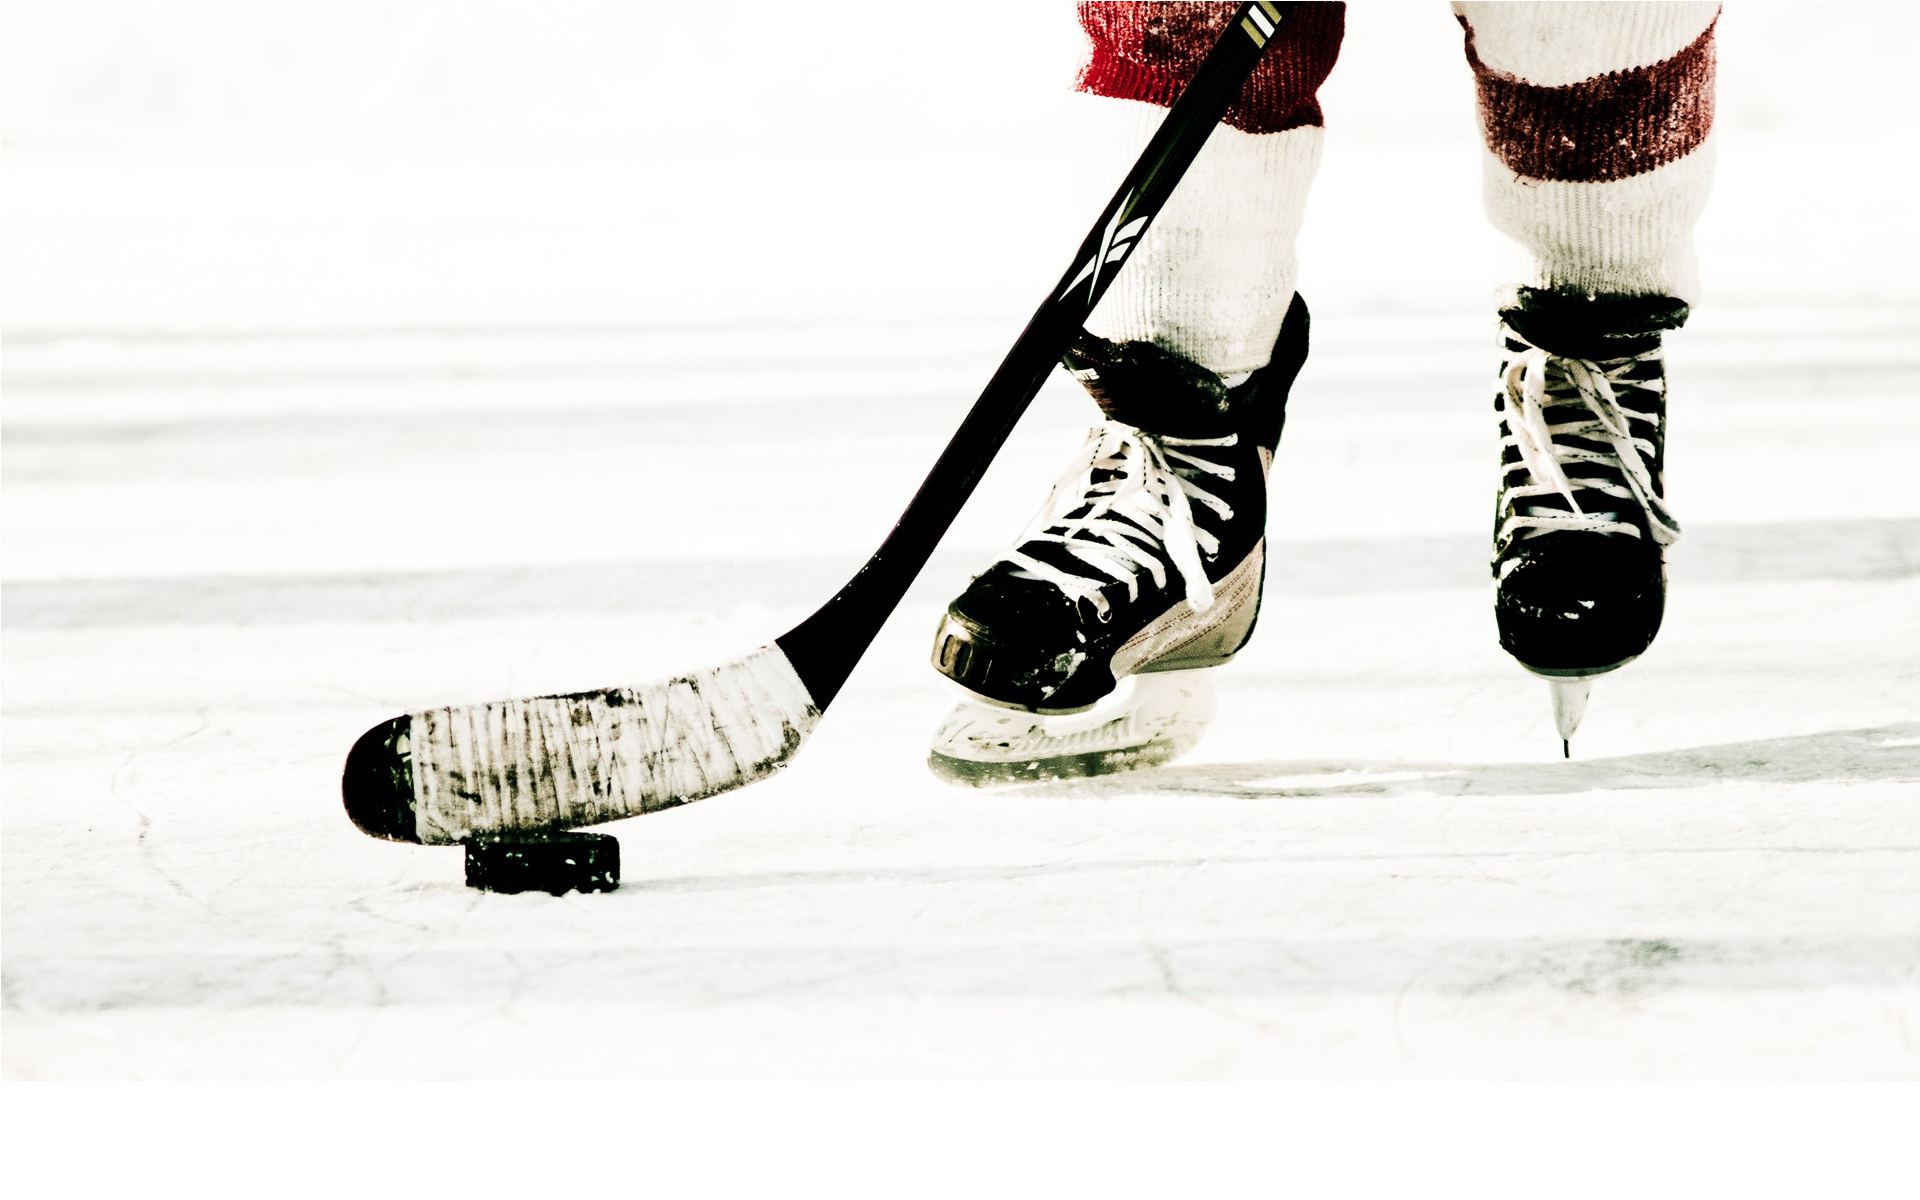 fond d'écran de hockey,le hockey,hockey sur glace,chaussure,jeux de bâton et de balle,équipement de hockey sur glace